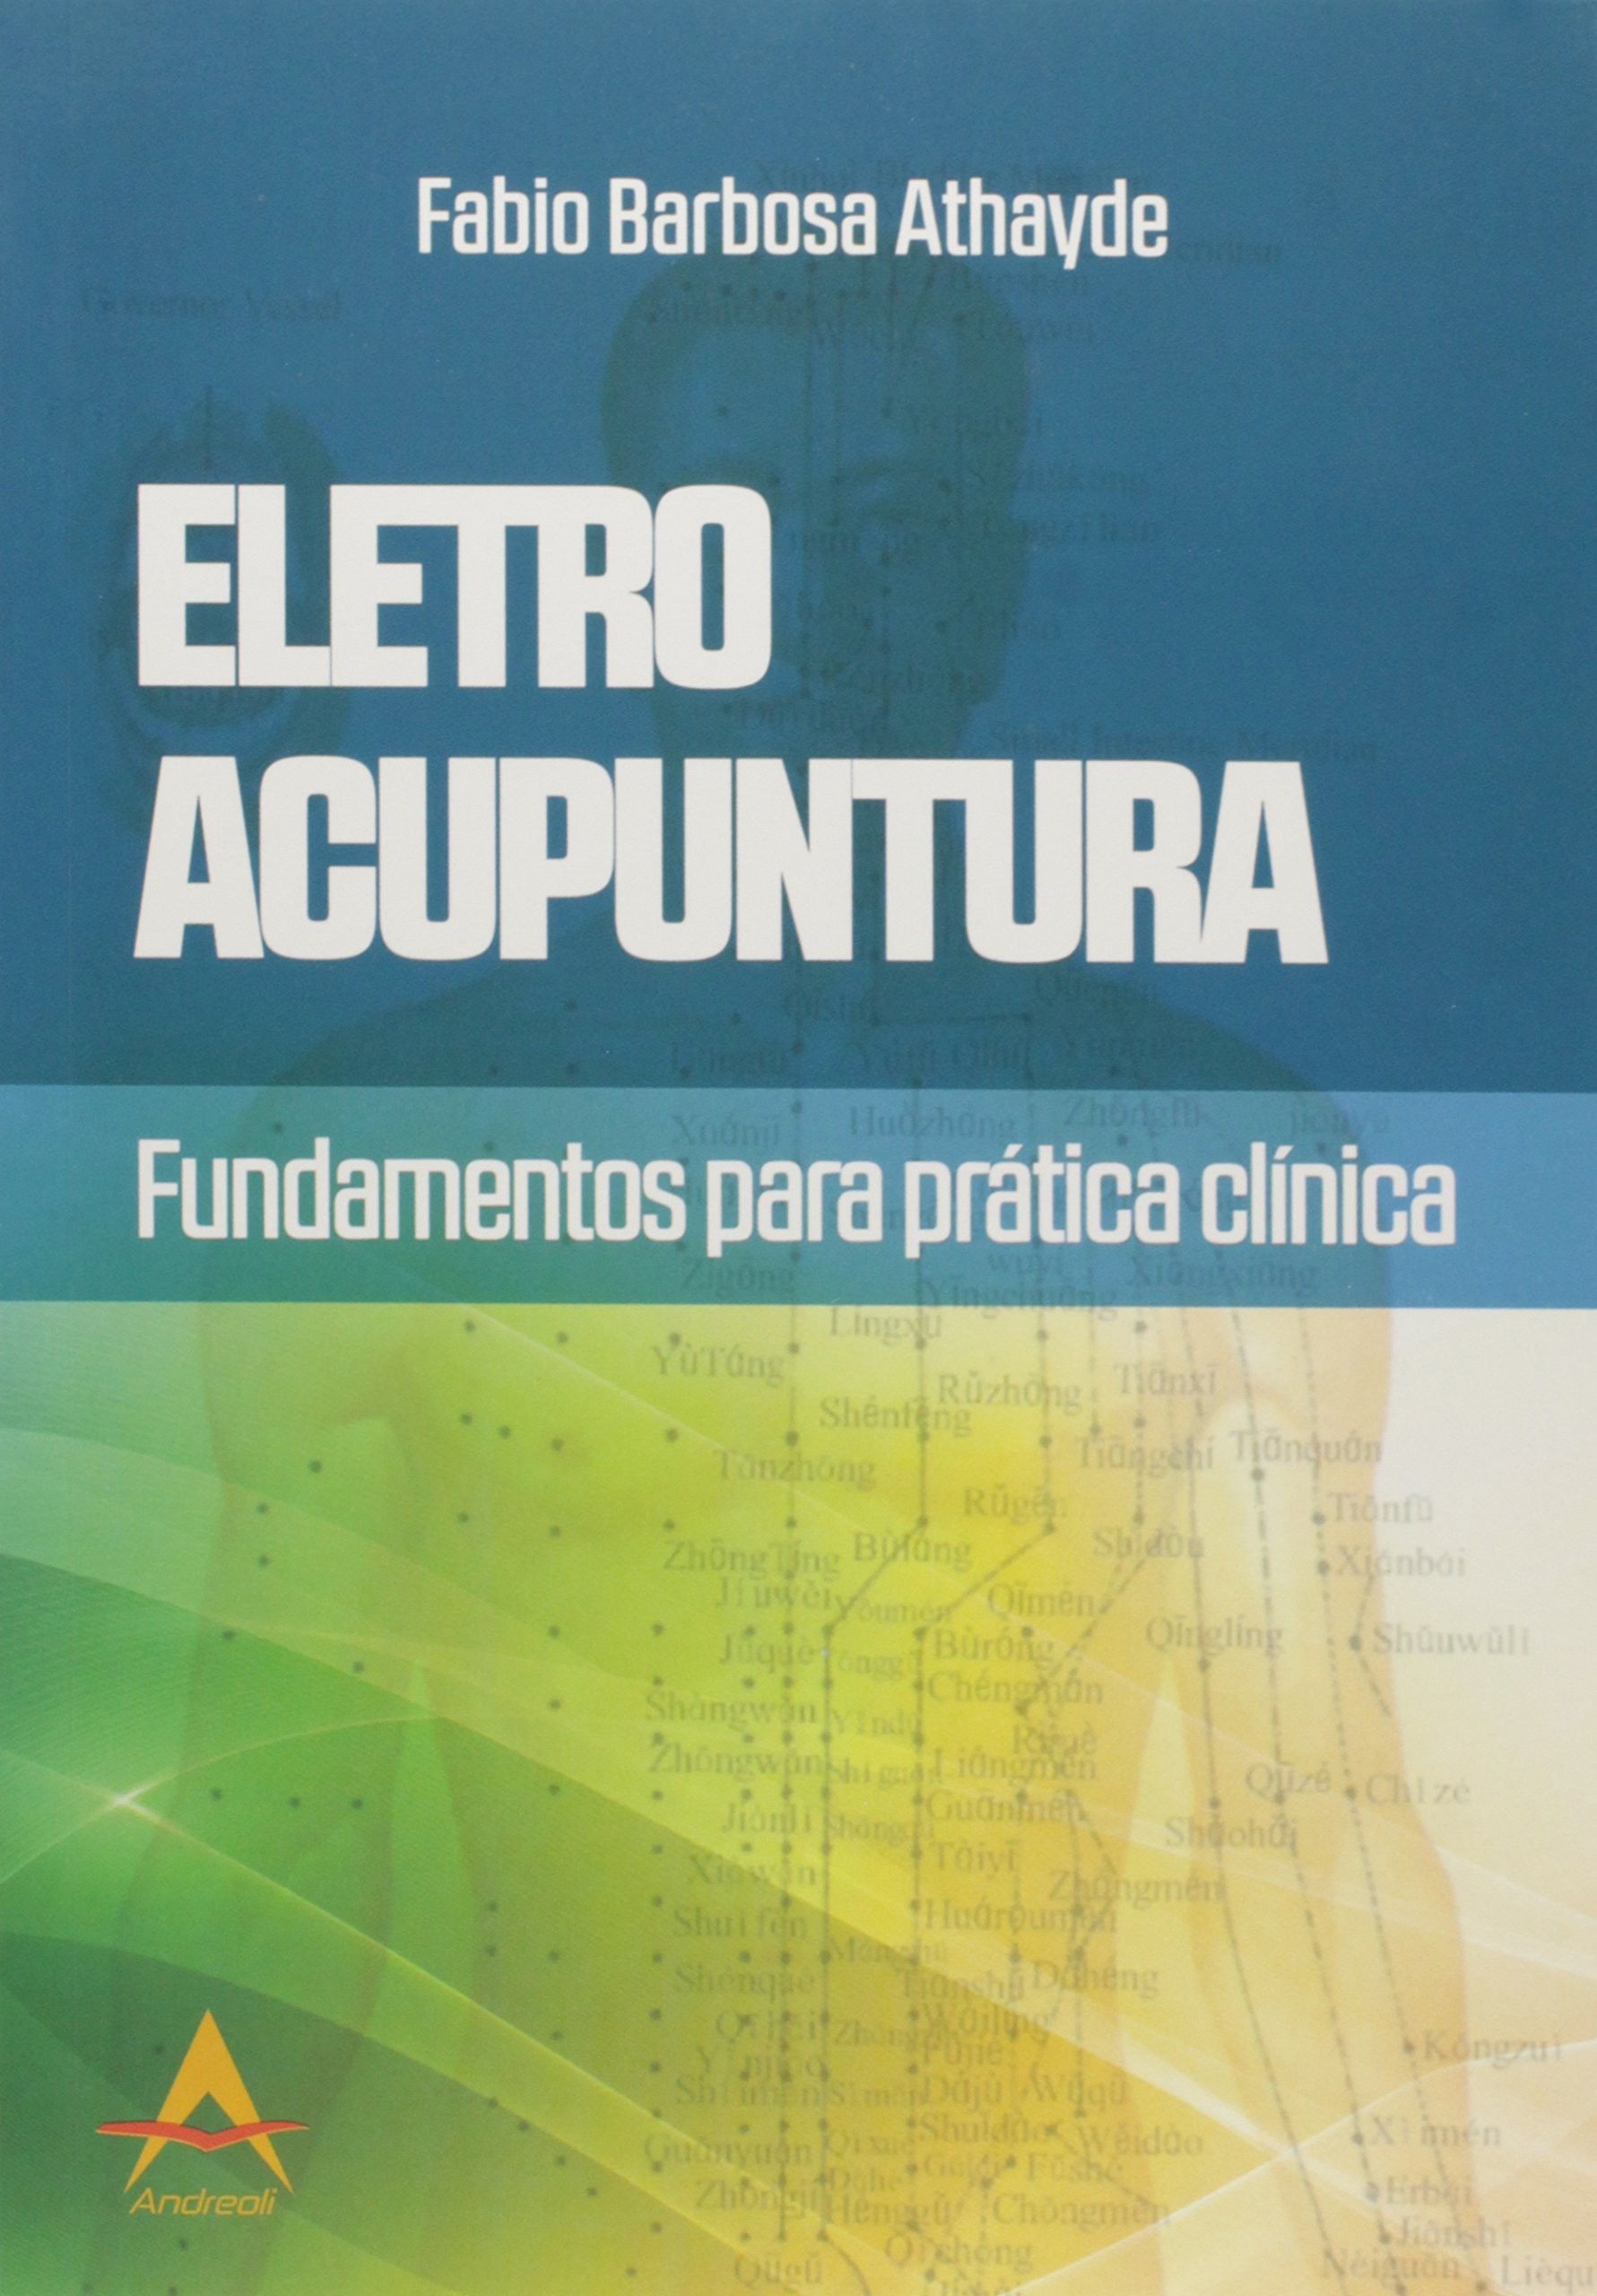 Eletro Acupuntura - Fundamentos Para Pratica Clínica